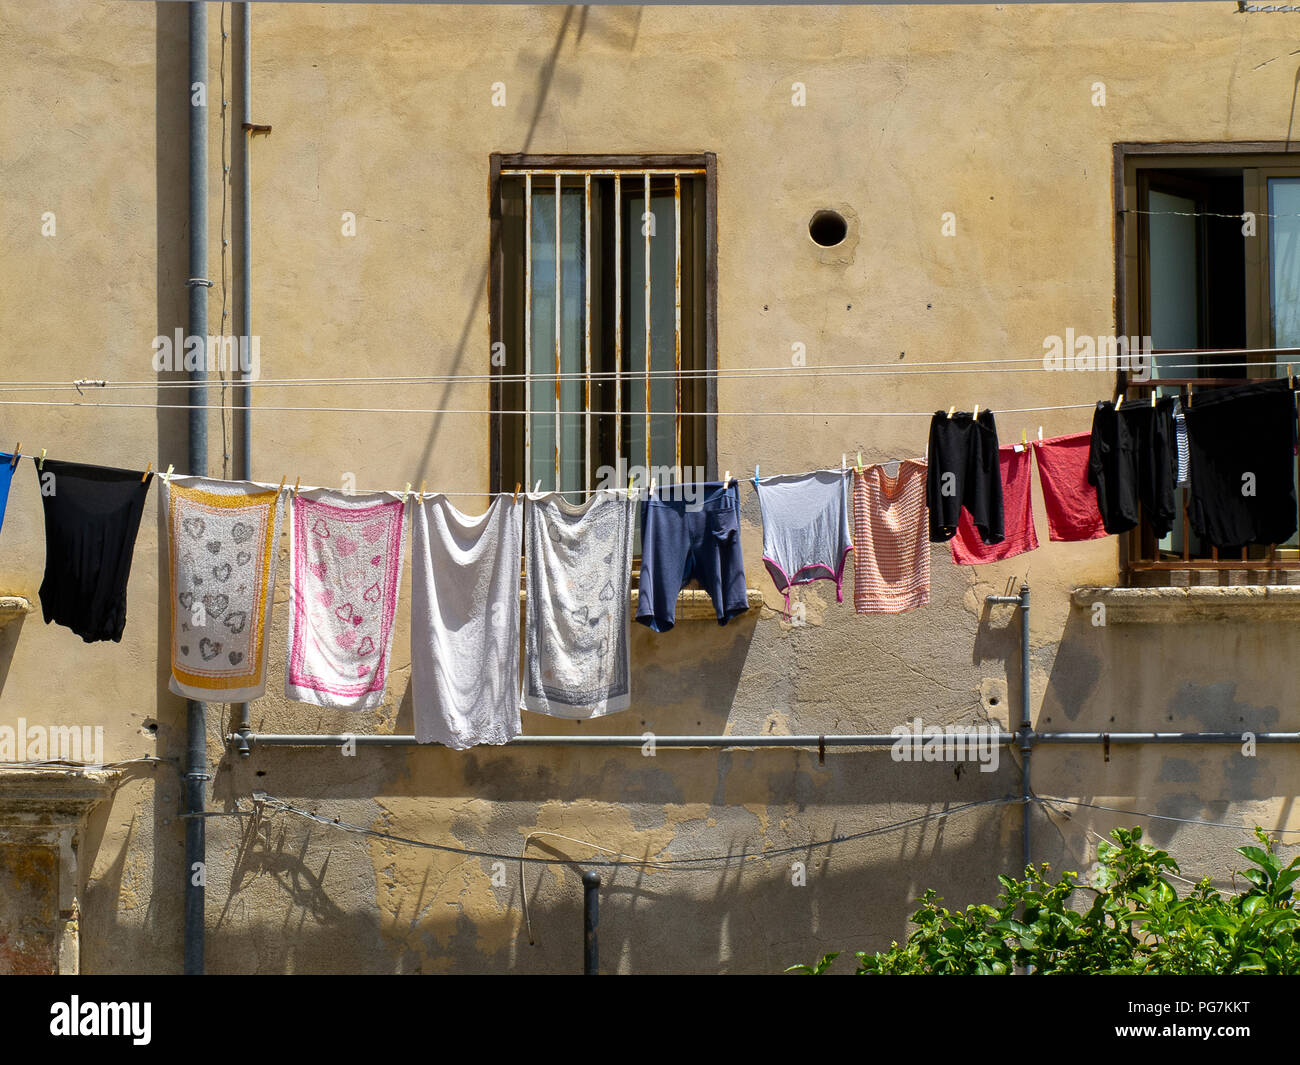 Lunga fila di abiti colorati appesi per asciugare in corrispondenza della finestra di un edificio, nel popolare quartiere di una città italiana Foto Stock